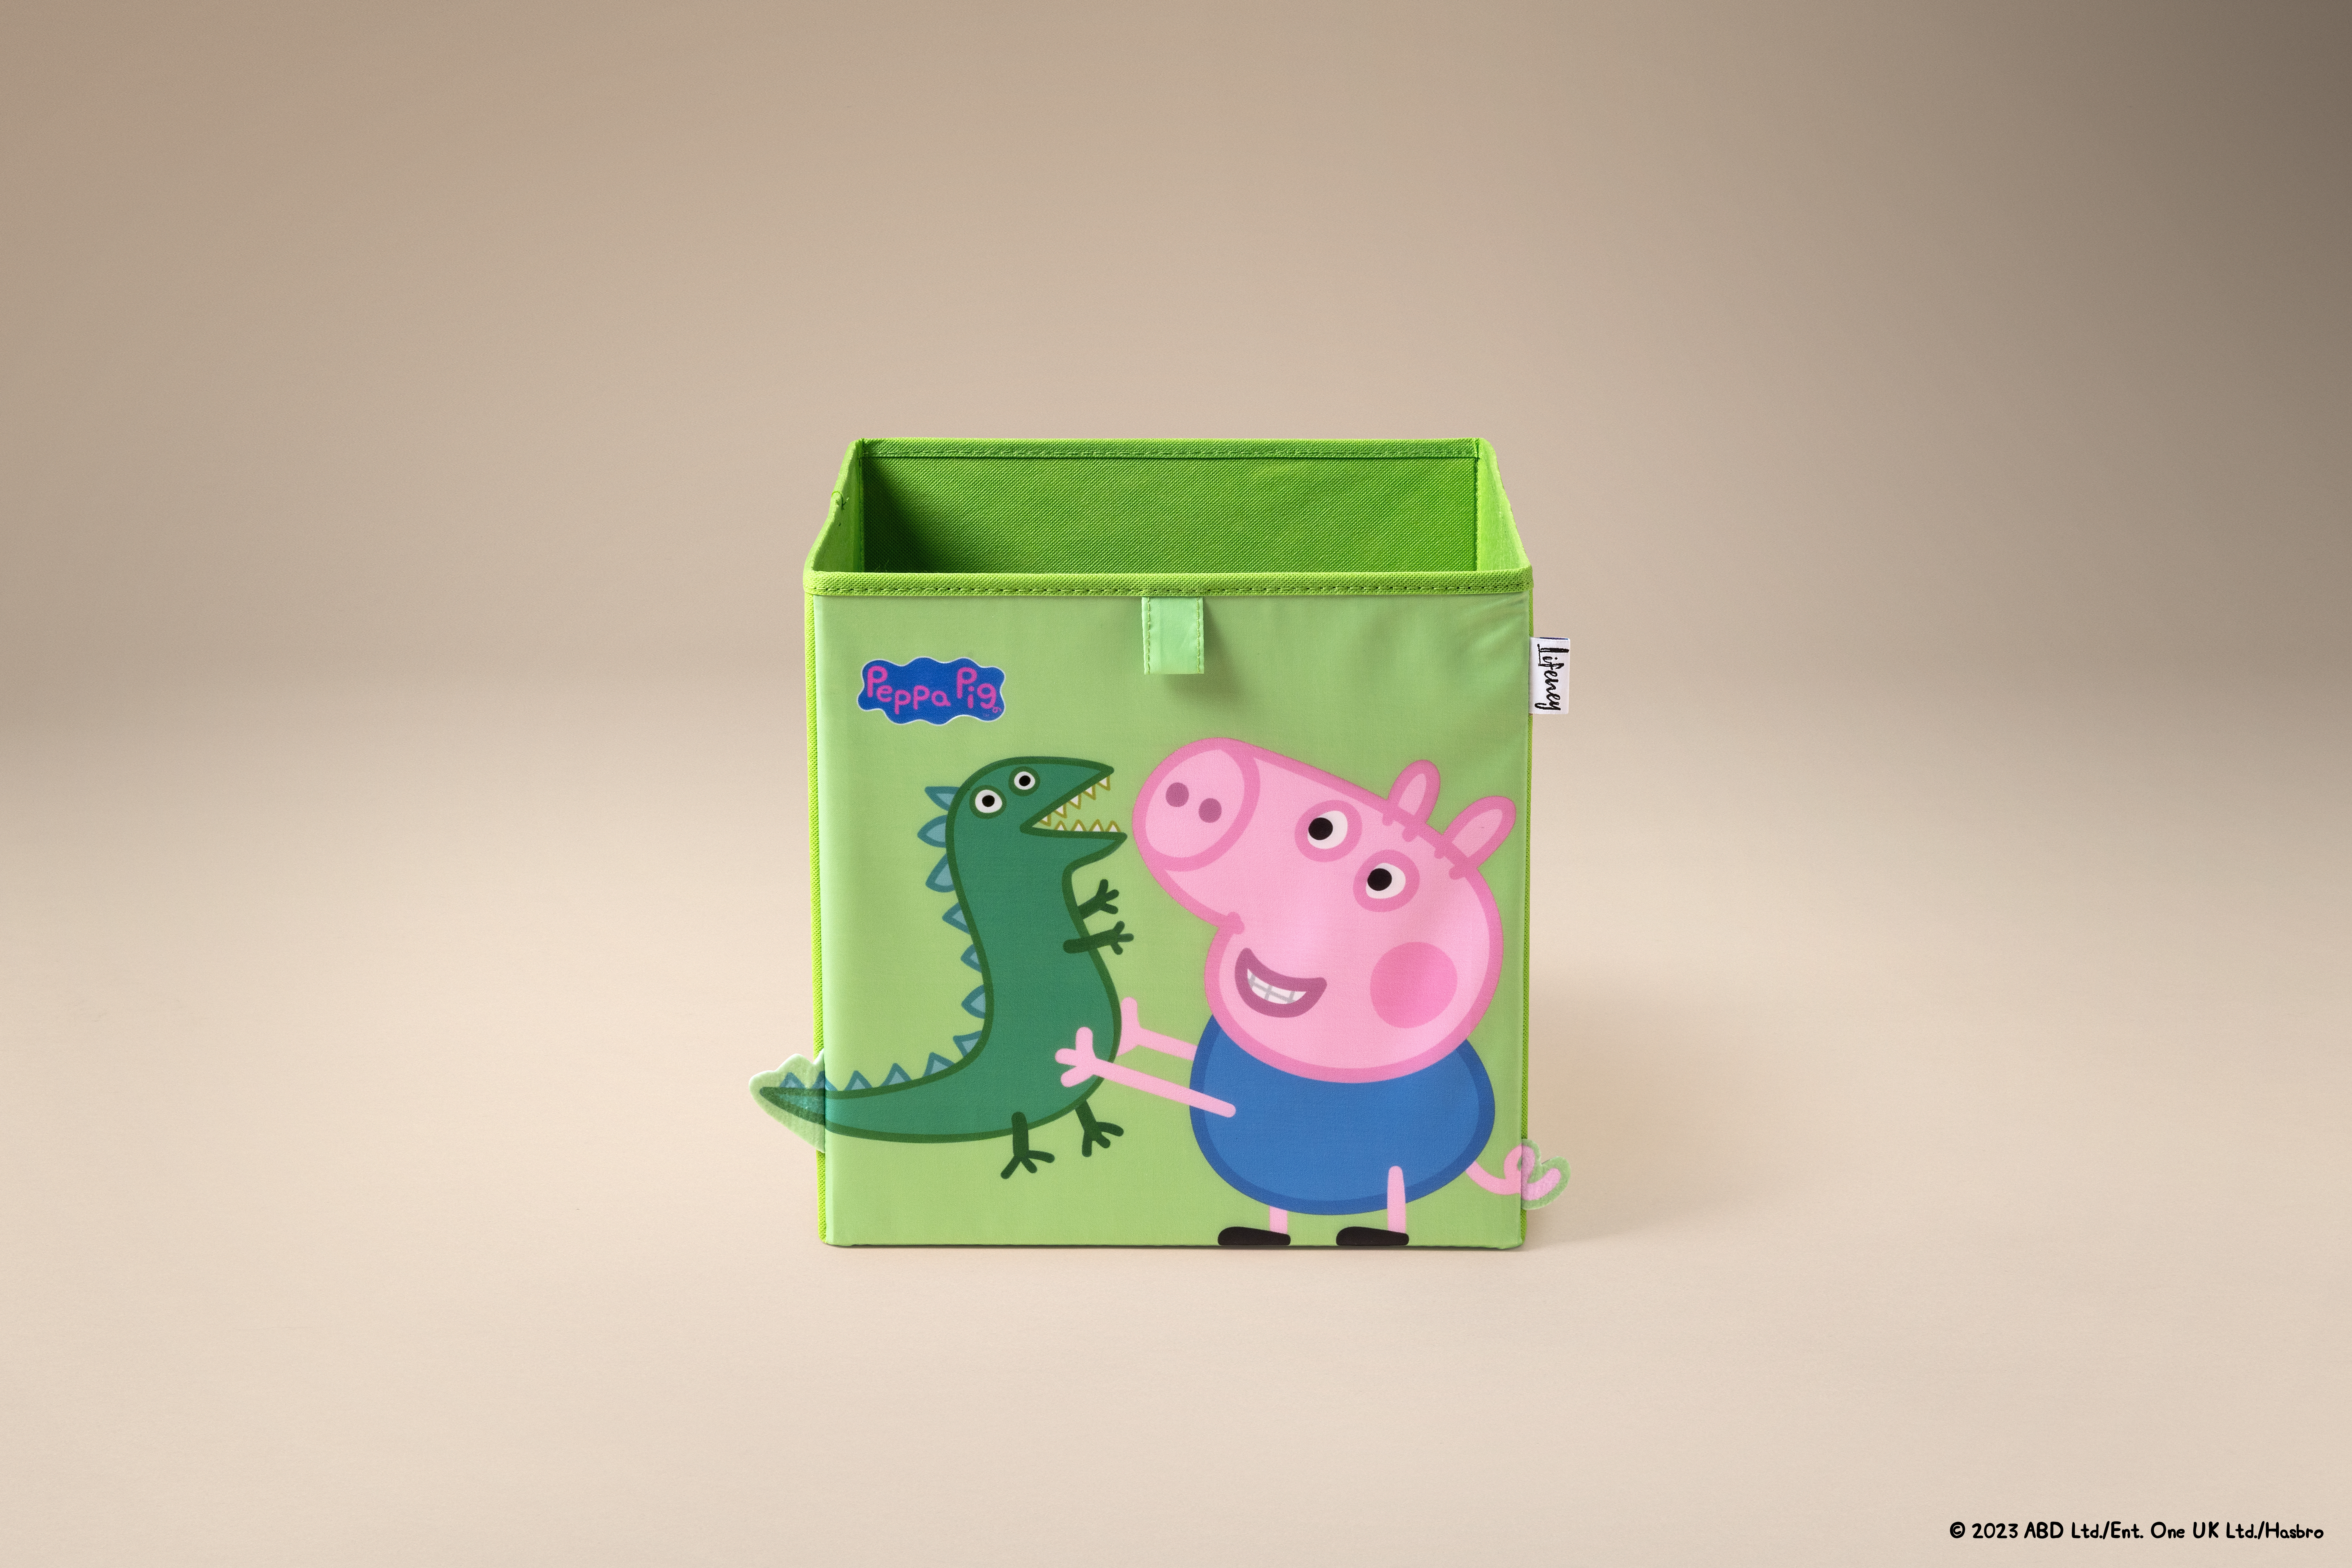 Caja de Almacenamiento Lifeney Peppa Pig George y Dino con Detalles en 3D, Diseño de Peppa Pig, Ideal para Organizar Juguetes, 5 Años de Garantía